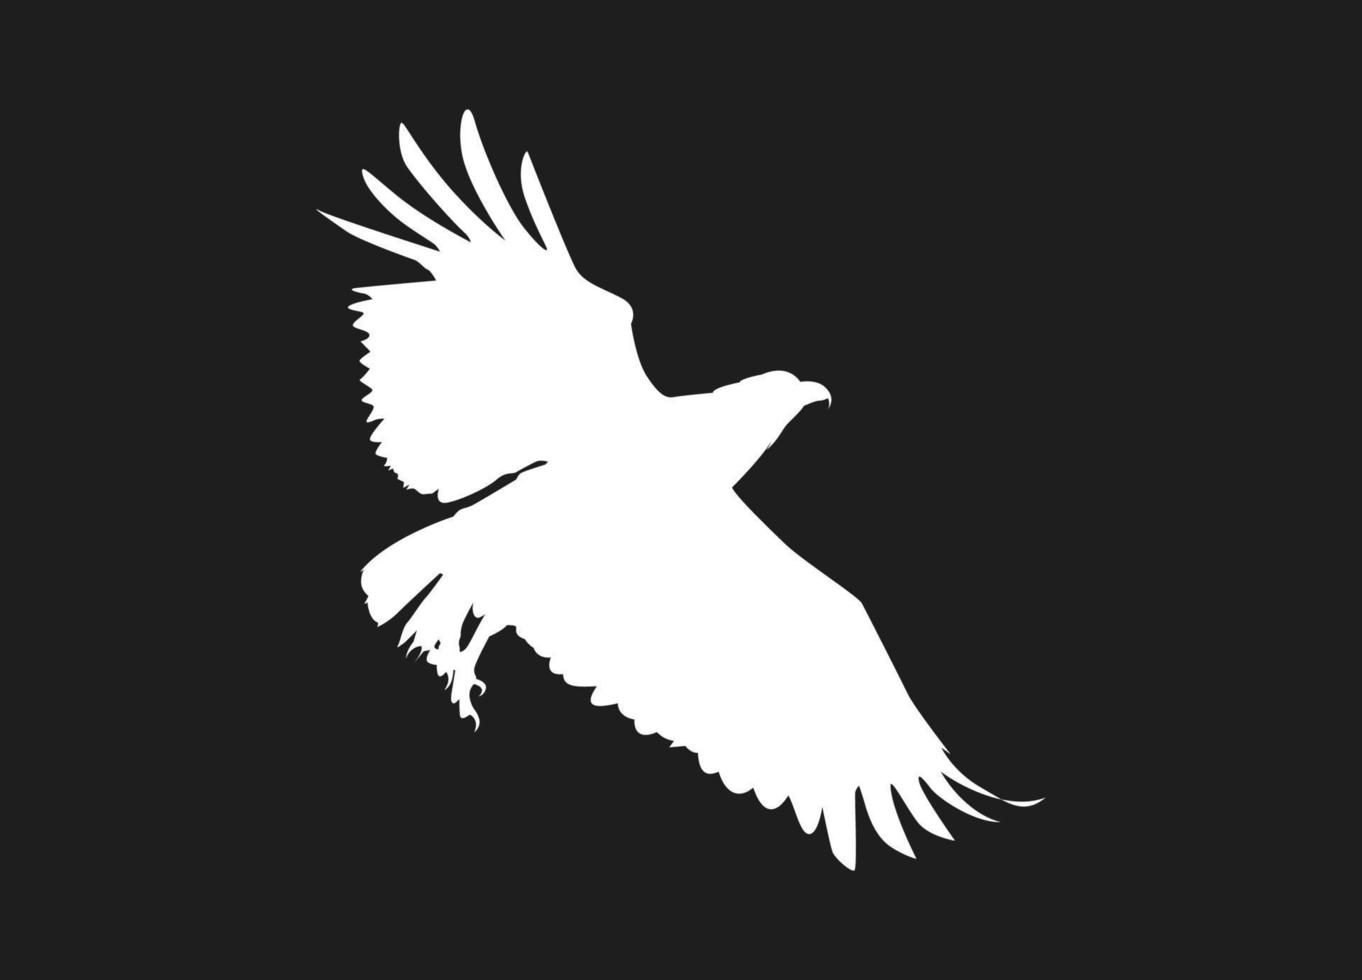 fliegender Vogel aus weißen Silhouetten isoliert auf schwarzem Hintergrund. geeignet für logo, symbol, banner, bakcground, tätowierung, bekleidung. Vogelelementvektor. Folge 10 vektor